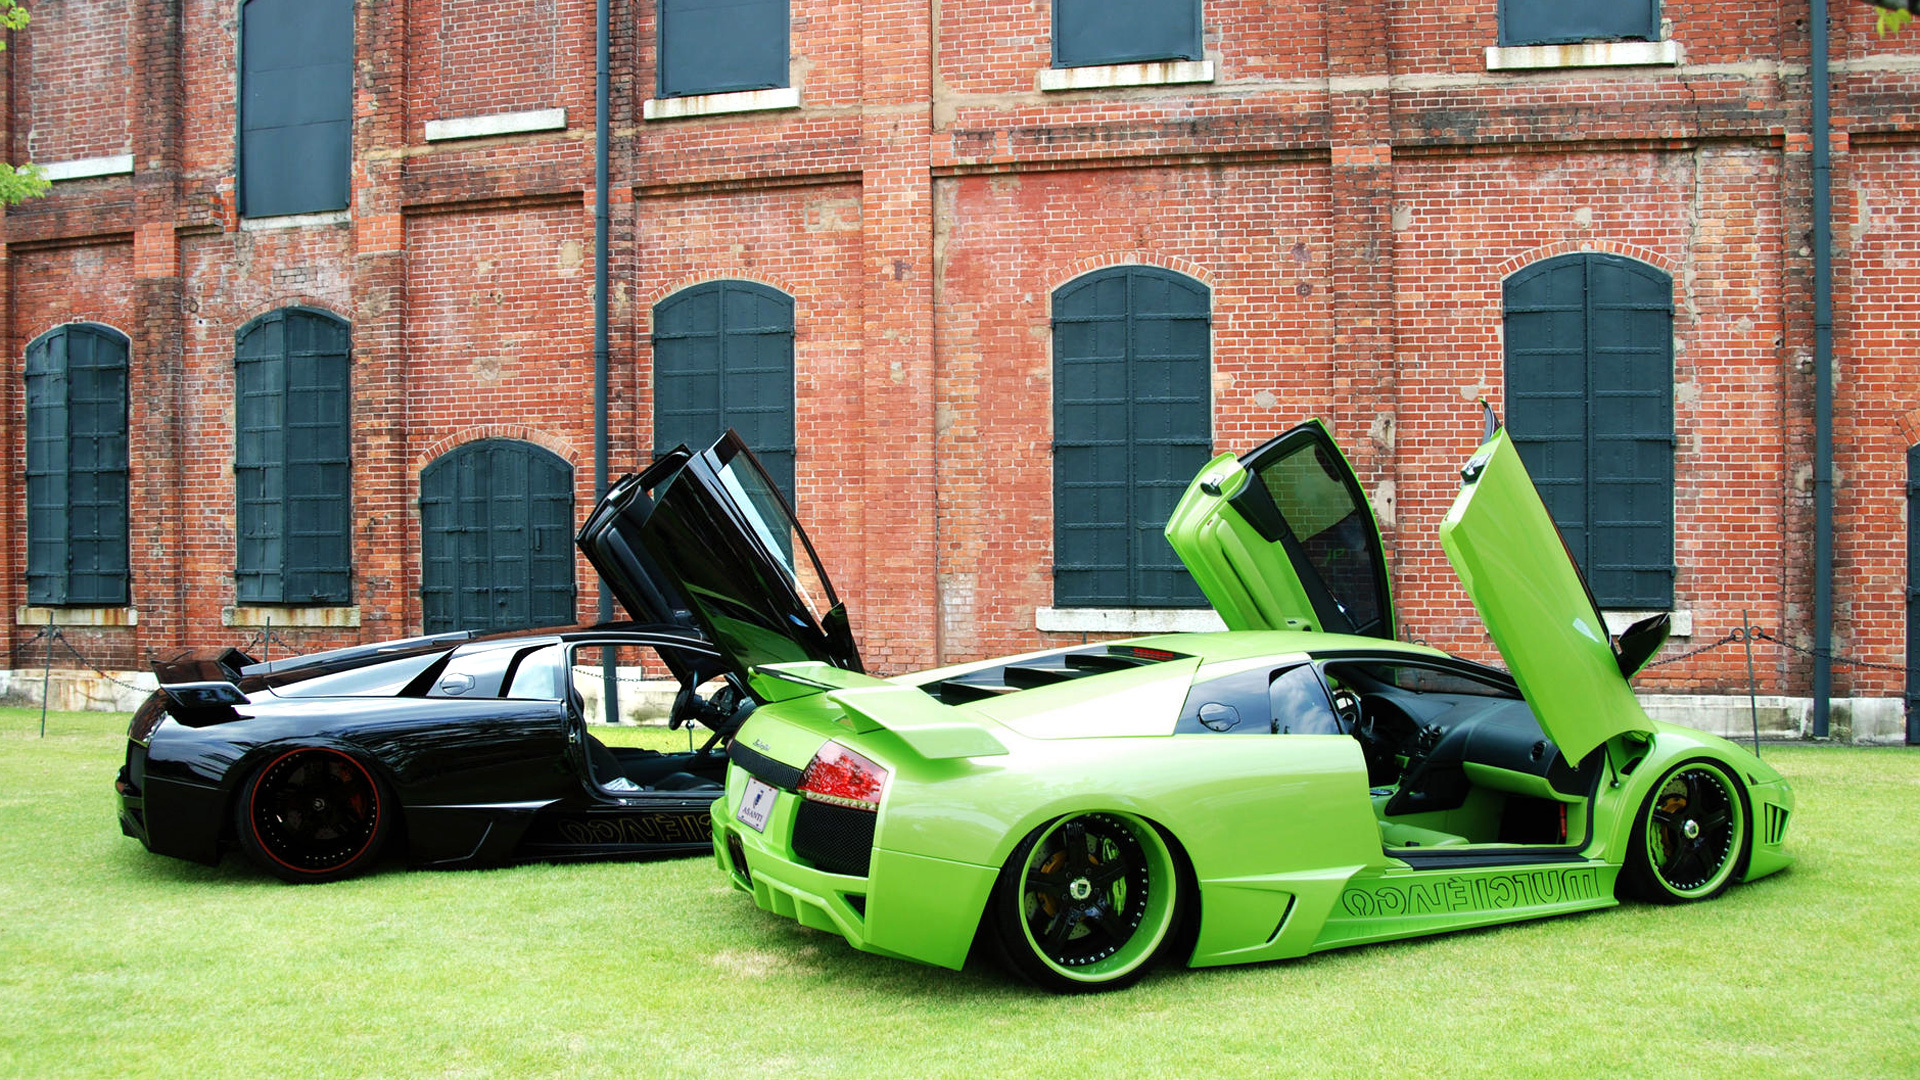 Lamborghini, Lamborghini Gallardo, rims, bricks, green cars Wallpaper